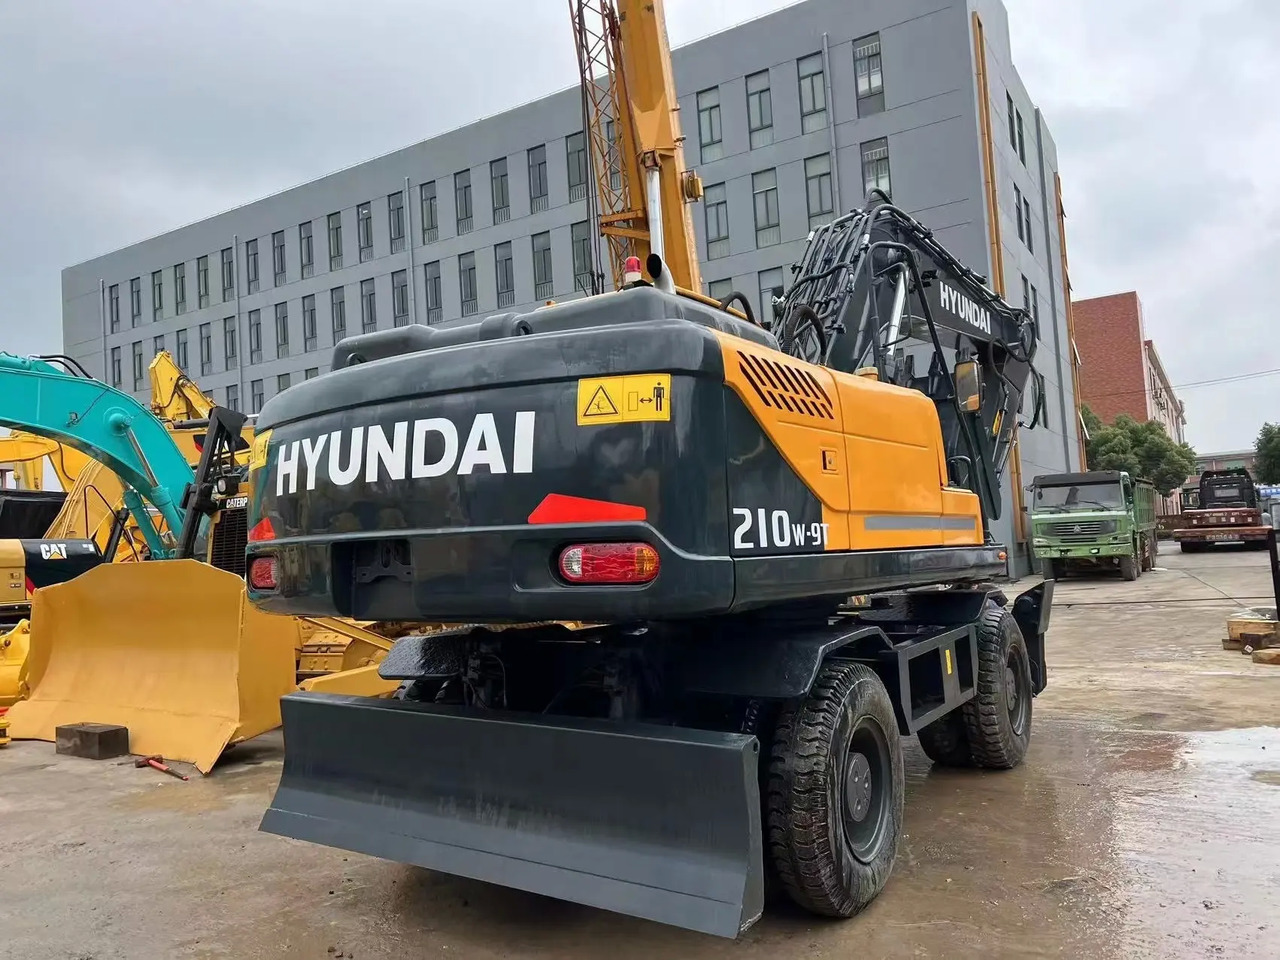 Колёсный экскаватор hyundai wheel excavator 210W-9T used excavator wheel excavator for sale: фото 6